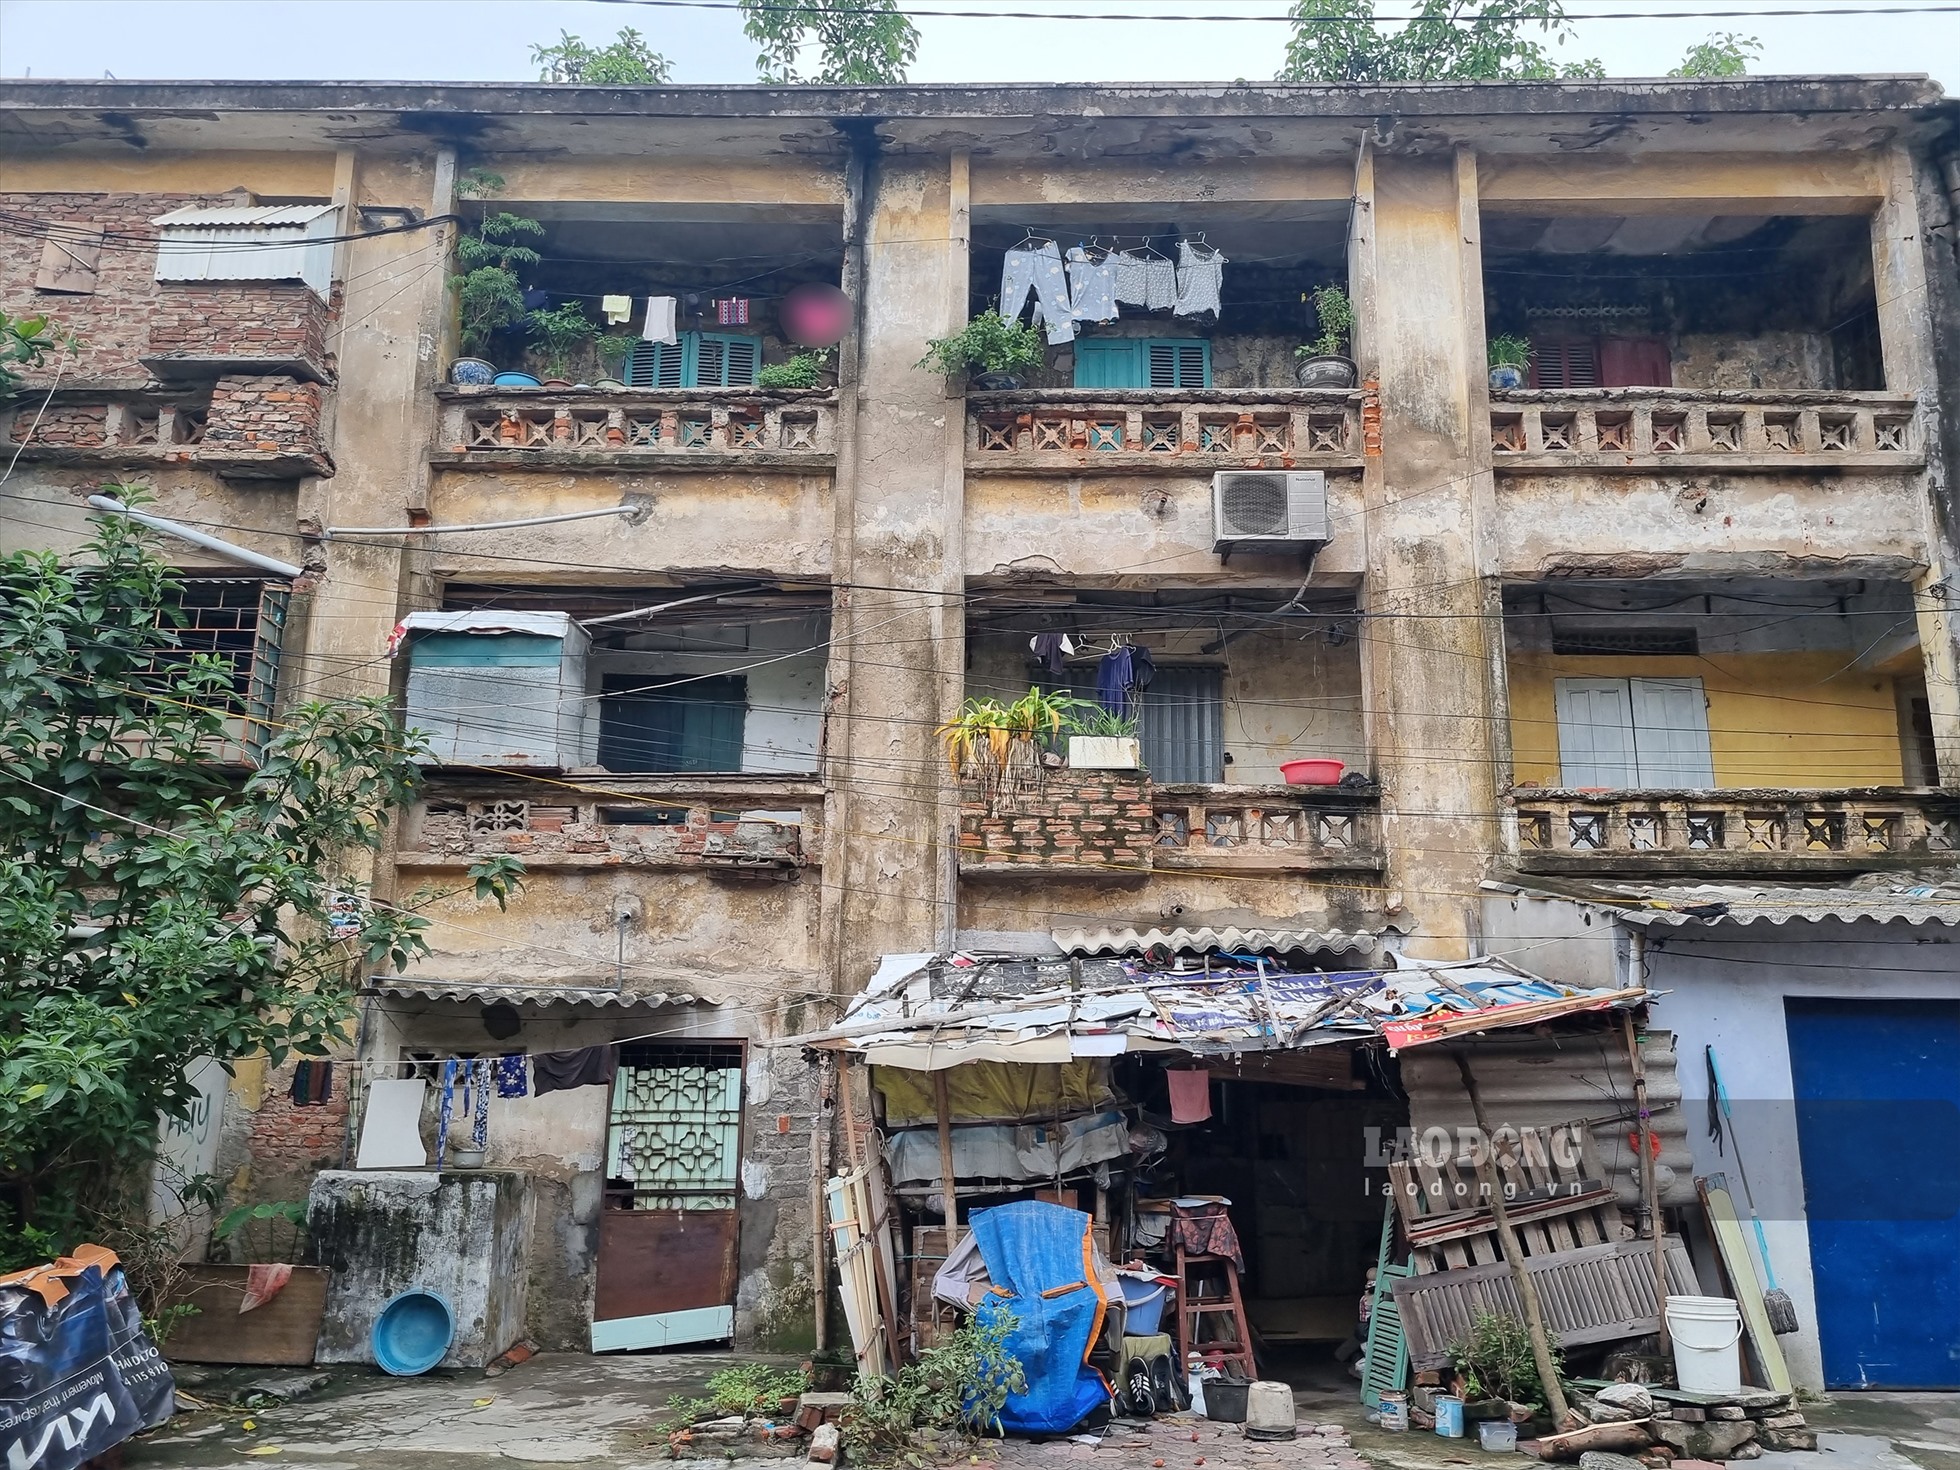 Khu tập thể Nhà máy bơm (phường Nguyễn Trãi, TP Hải Dương) được xây dựng từ những năm 1960 - 1970 gồm 5 khối nhà 2 - 3 tầng và 11 dãy nhà cấp 4. Hiện nay, các căn hộ đều đã xuống cấp, tường bị vỡ từng mảng vữa, bong tróc, trần, dầm, trụ cũng đã bị mục nát ở nhiều vị trí.